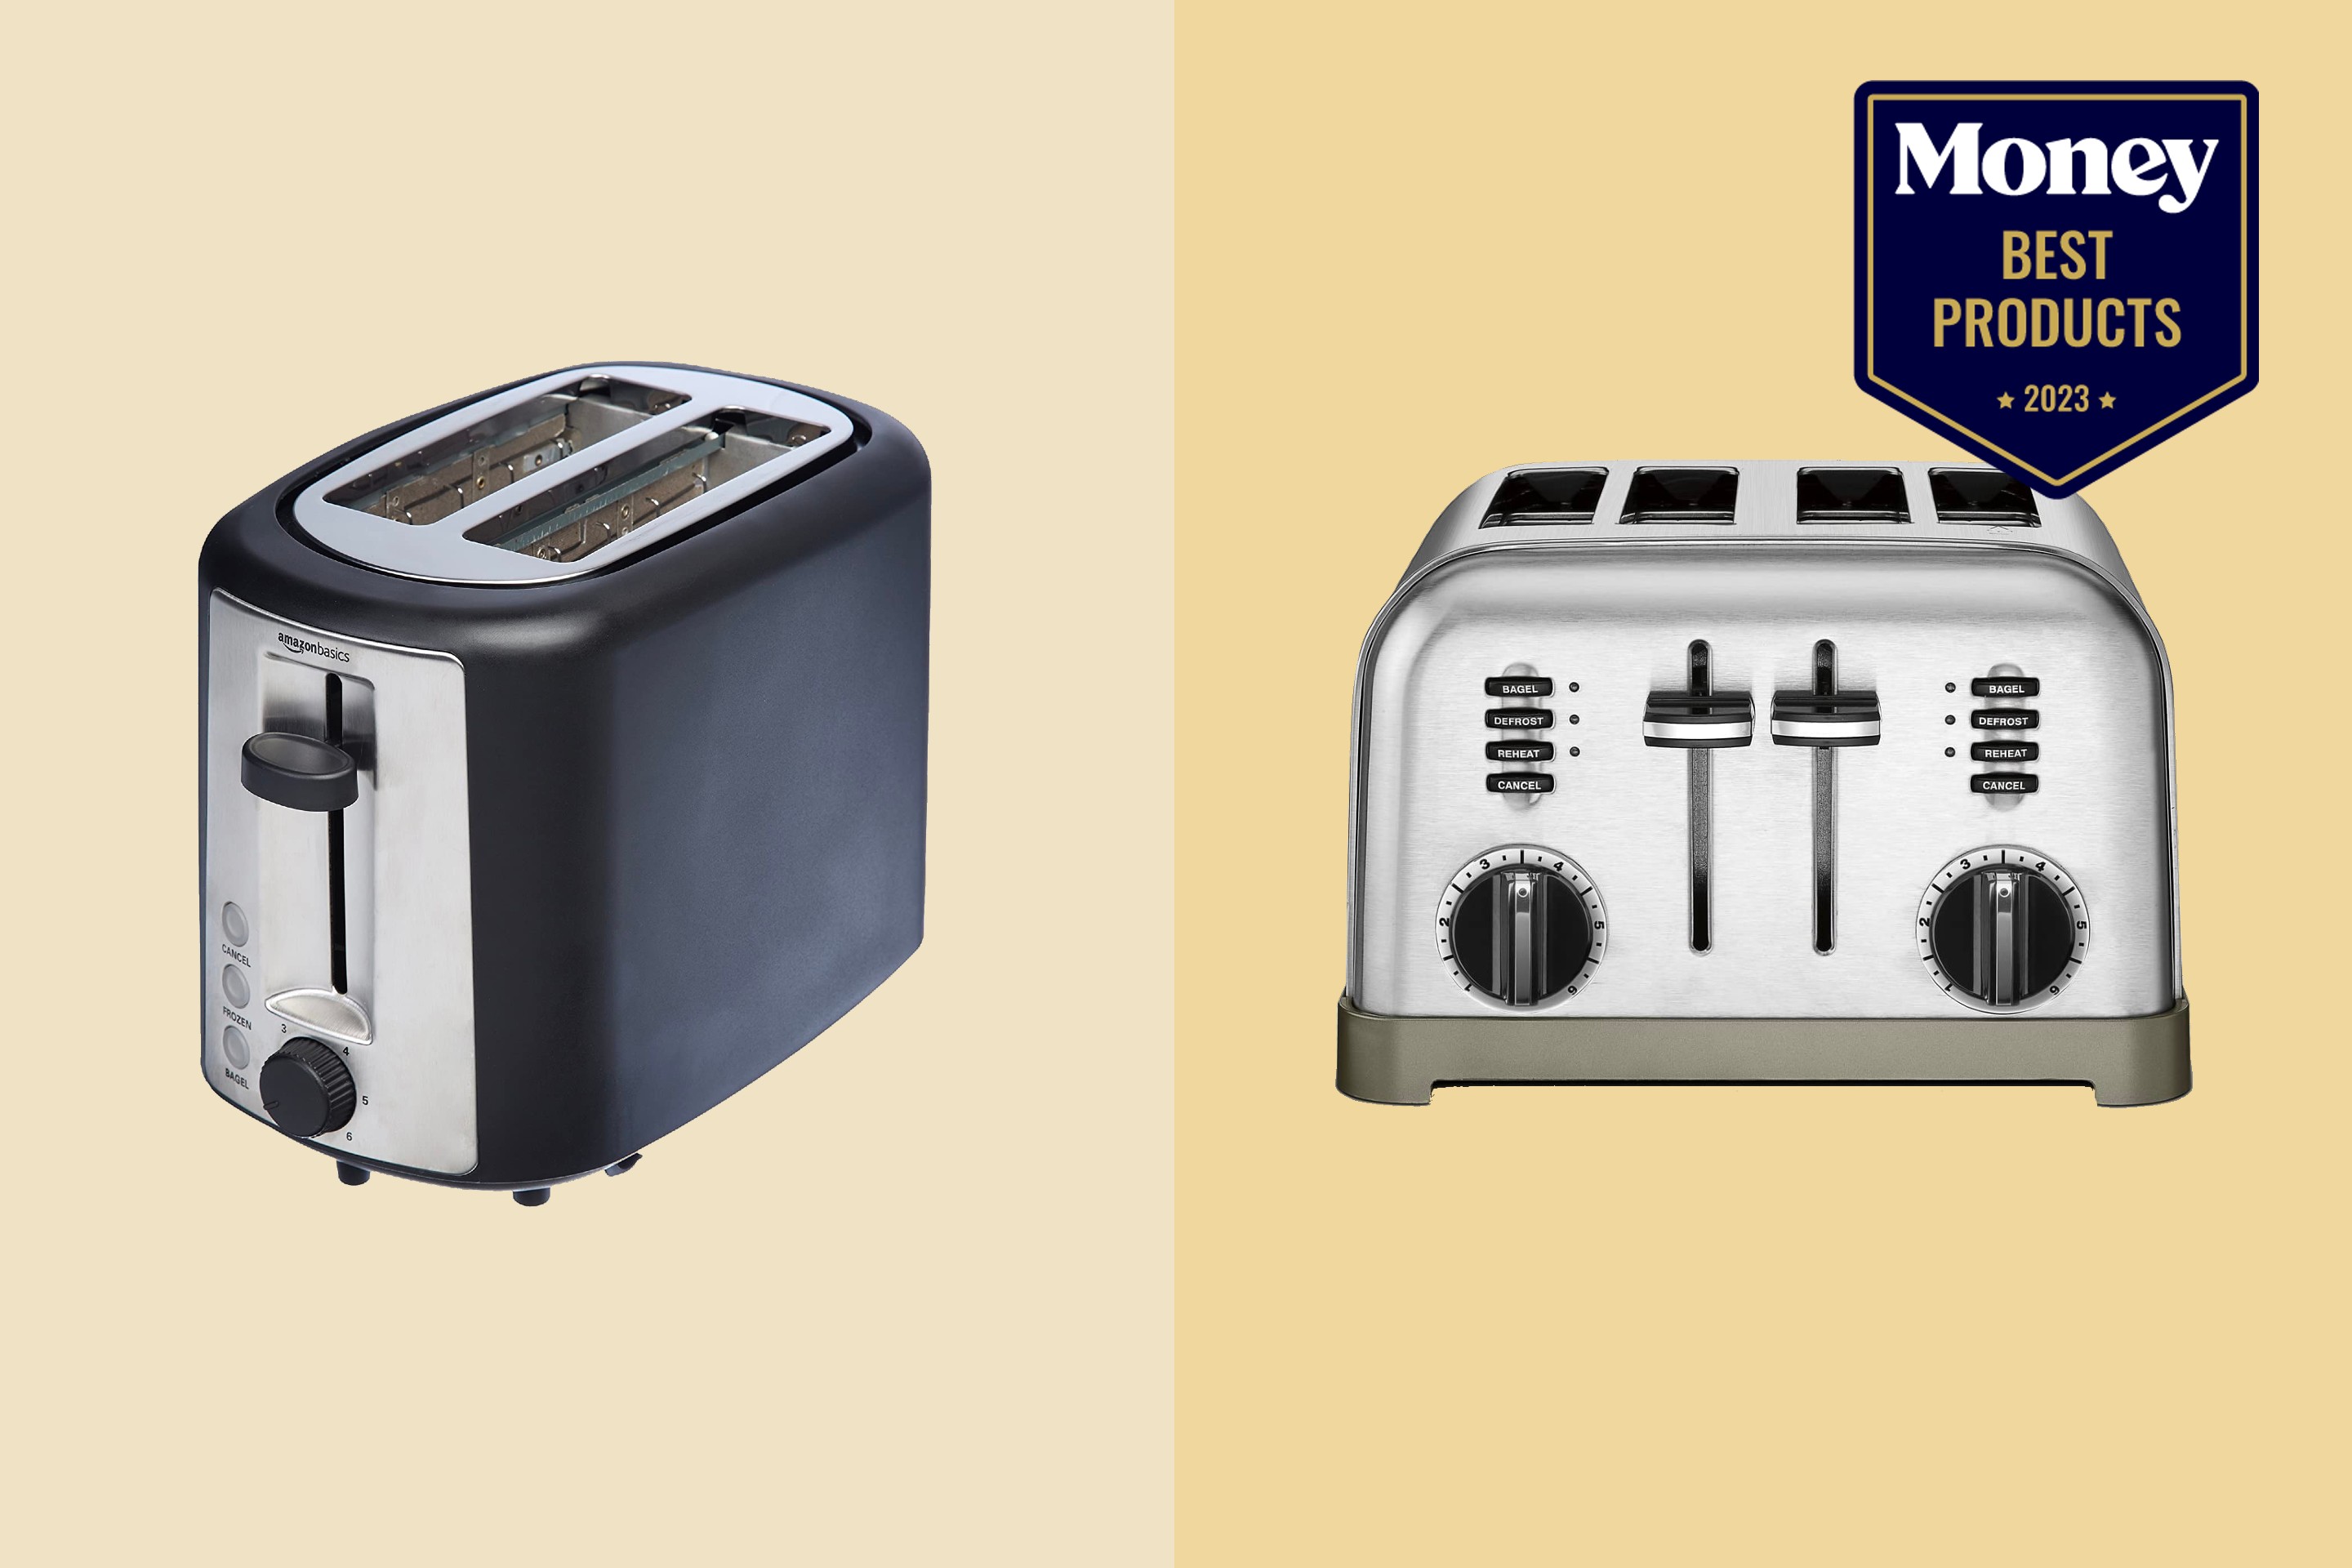   Basics 4 Slot Toaster - Black: Home & Kitchen